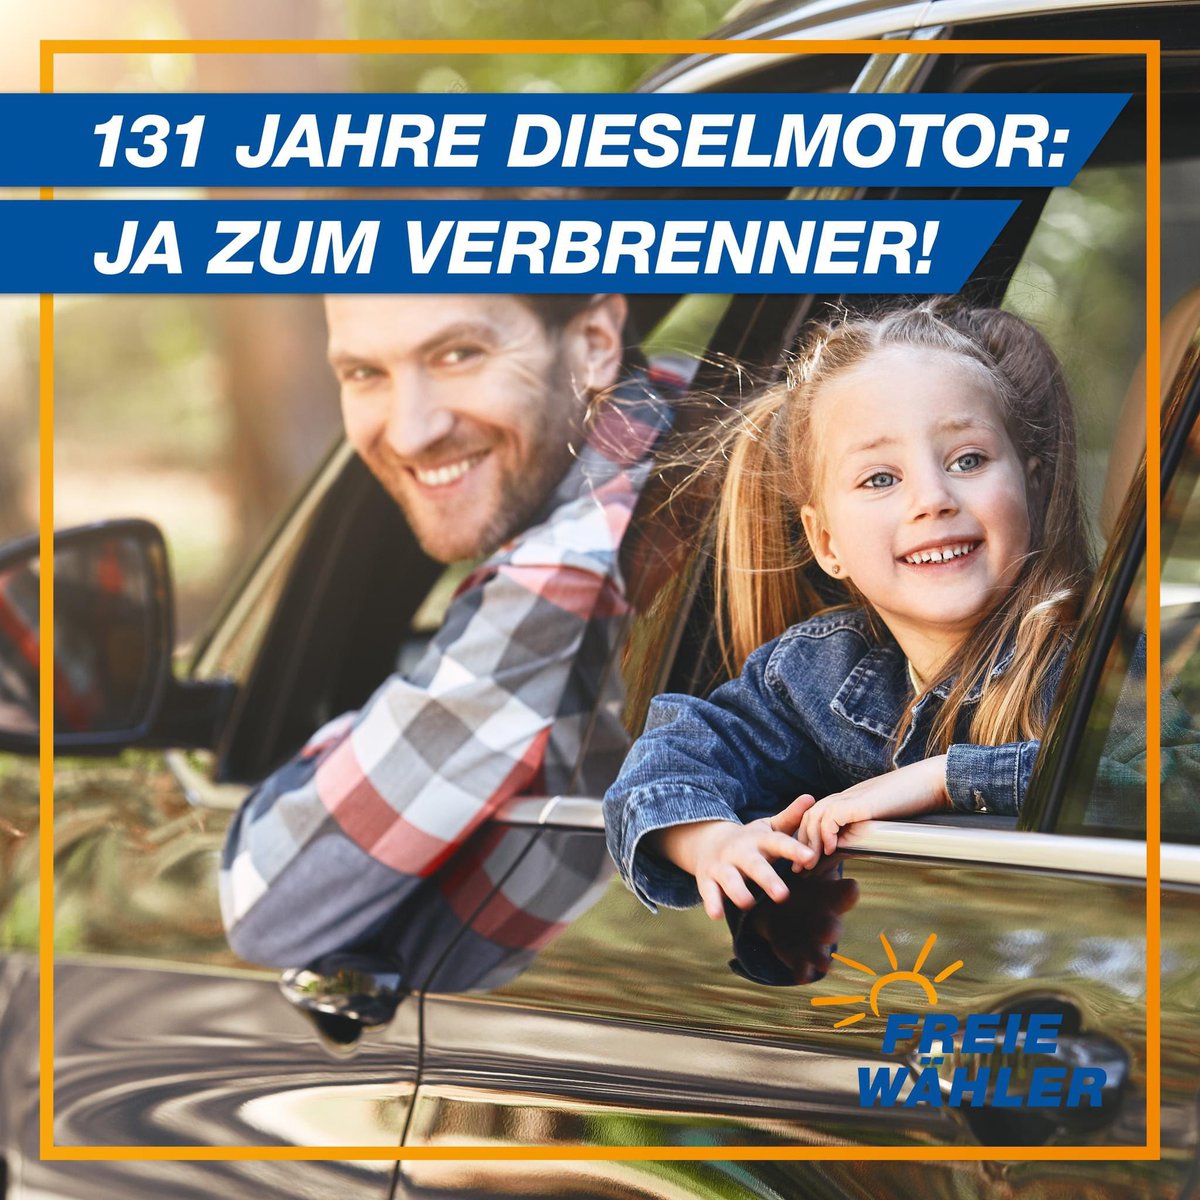 Schlüsselindustrie Auto in Deutschland erhalten! 🚗🚙

#Auto #Verbrenner #Diesel #Mobilität #Verkehr

Vor 131 Jahren erhielt Rudolf Diesel sein Patent für „Arbeitsverfahren und Ausführungsart für Verbrennungskraftmaschinen“, heute bekannt als Dieselmotor. 

Gerade in Deutschland